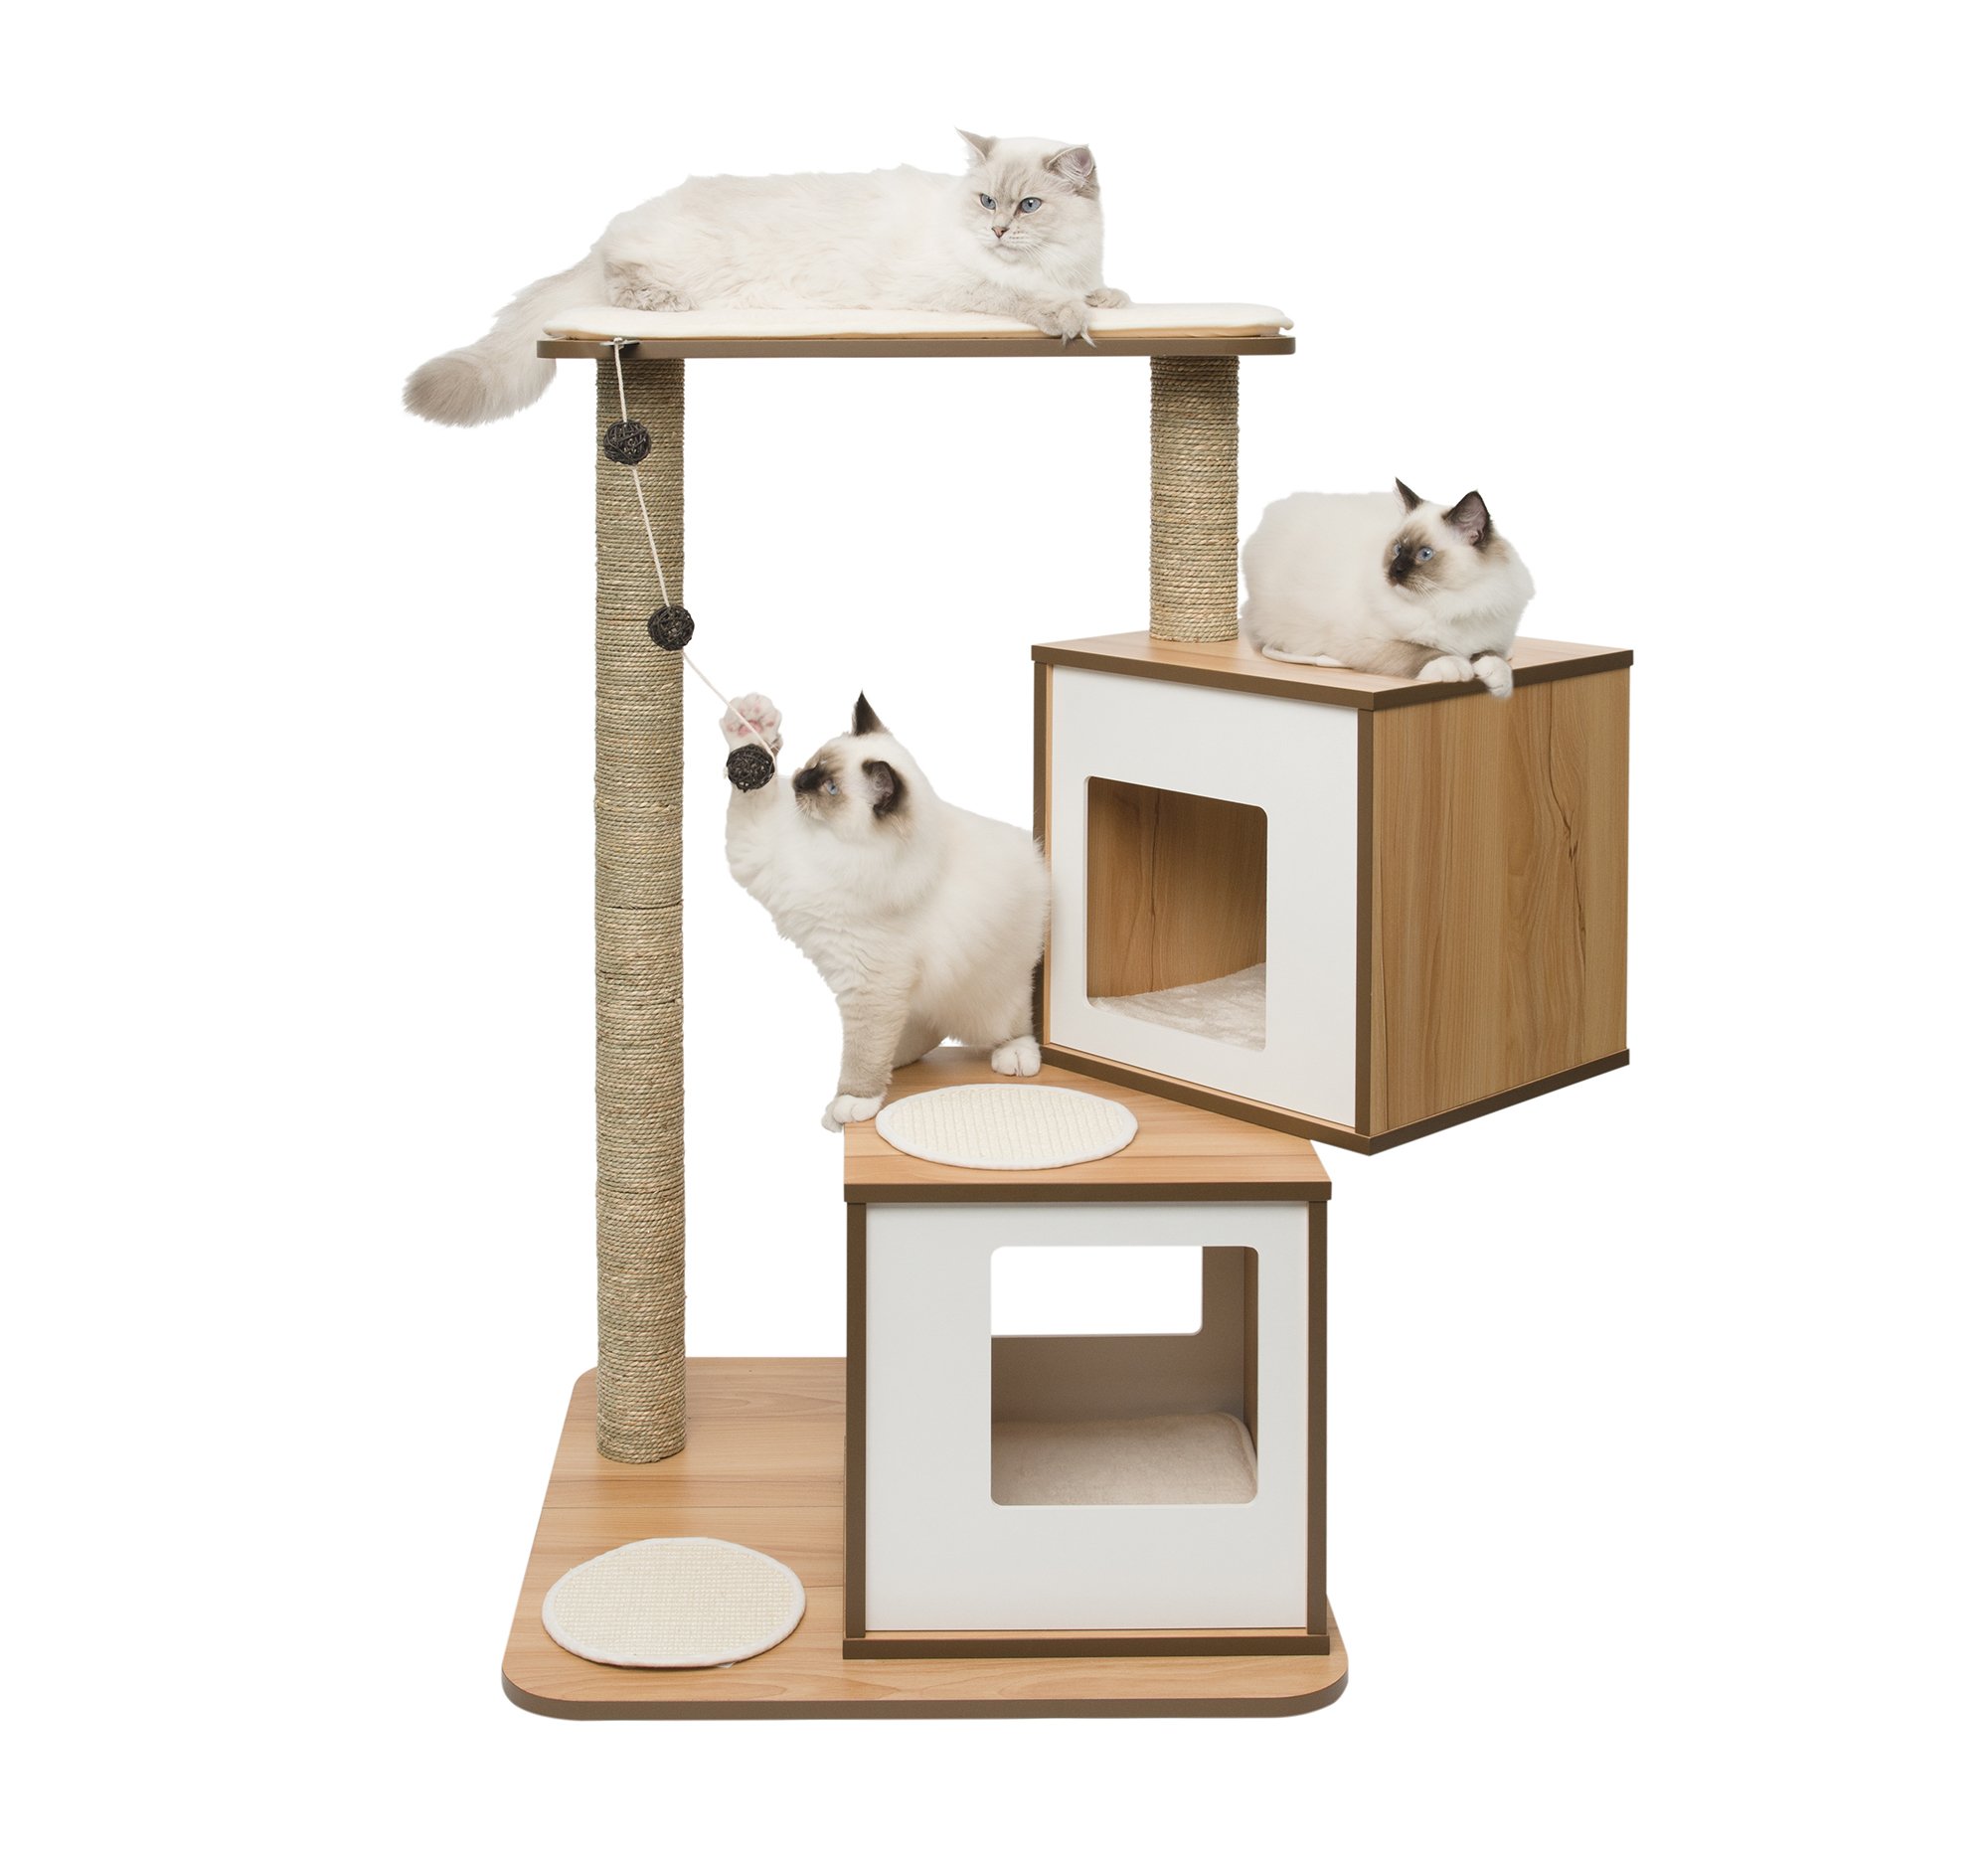 VESPER Catit 52048 Vesper Katzenmöbel Double, walnuss, zwei Kubus-Höhlen mit einer Plattform, 1 Stück (1er Pack)